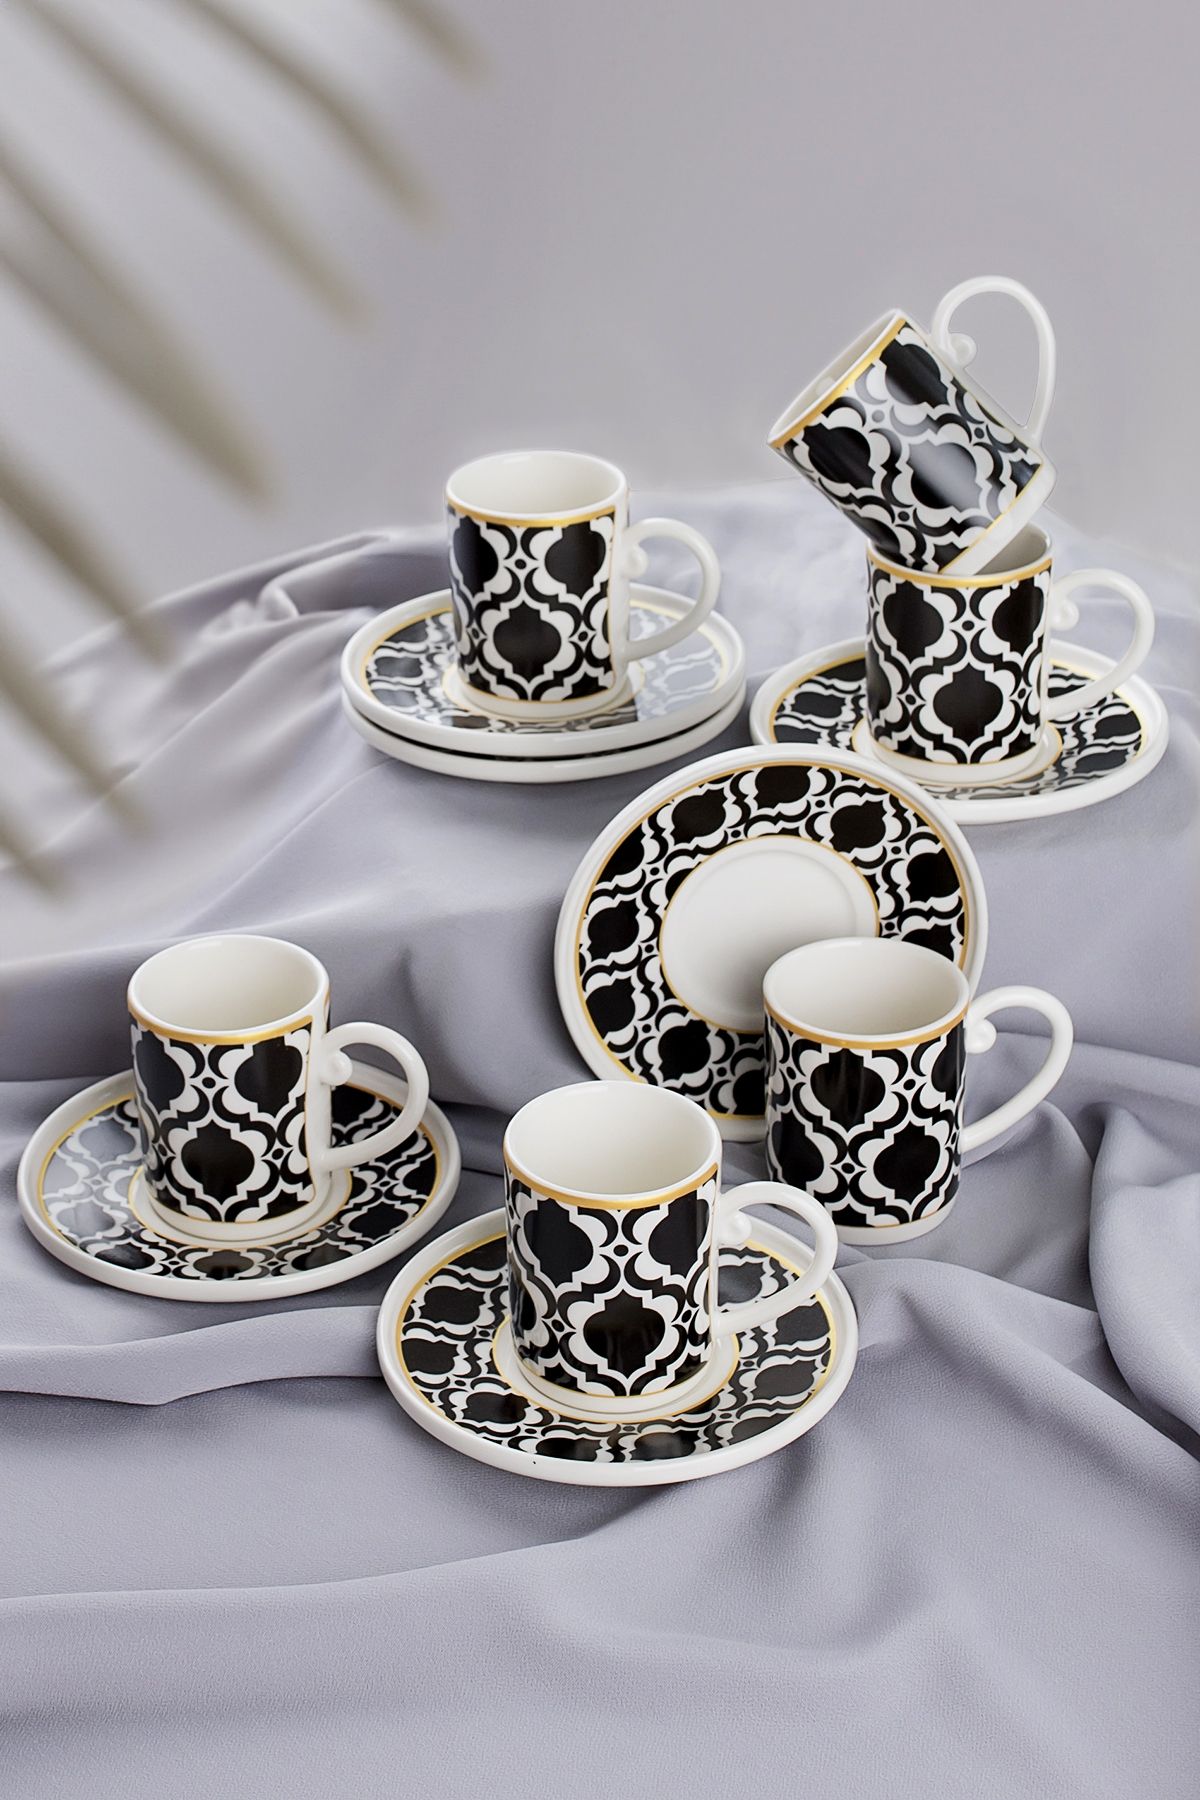 Tulü Porselen Semazen 6 Kişilik 12 Parça Altın Yaldızlı Türk Kahvesi Fincan Takımı - Siyah Beyaz